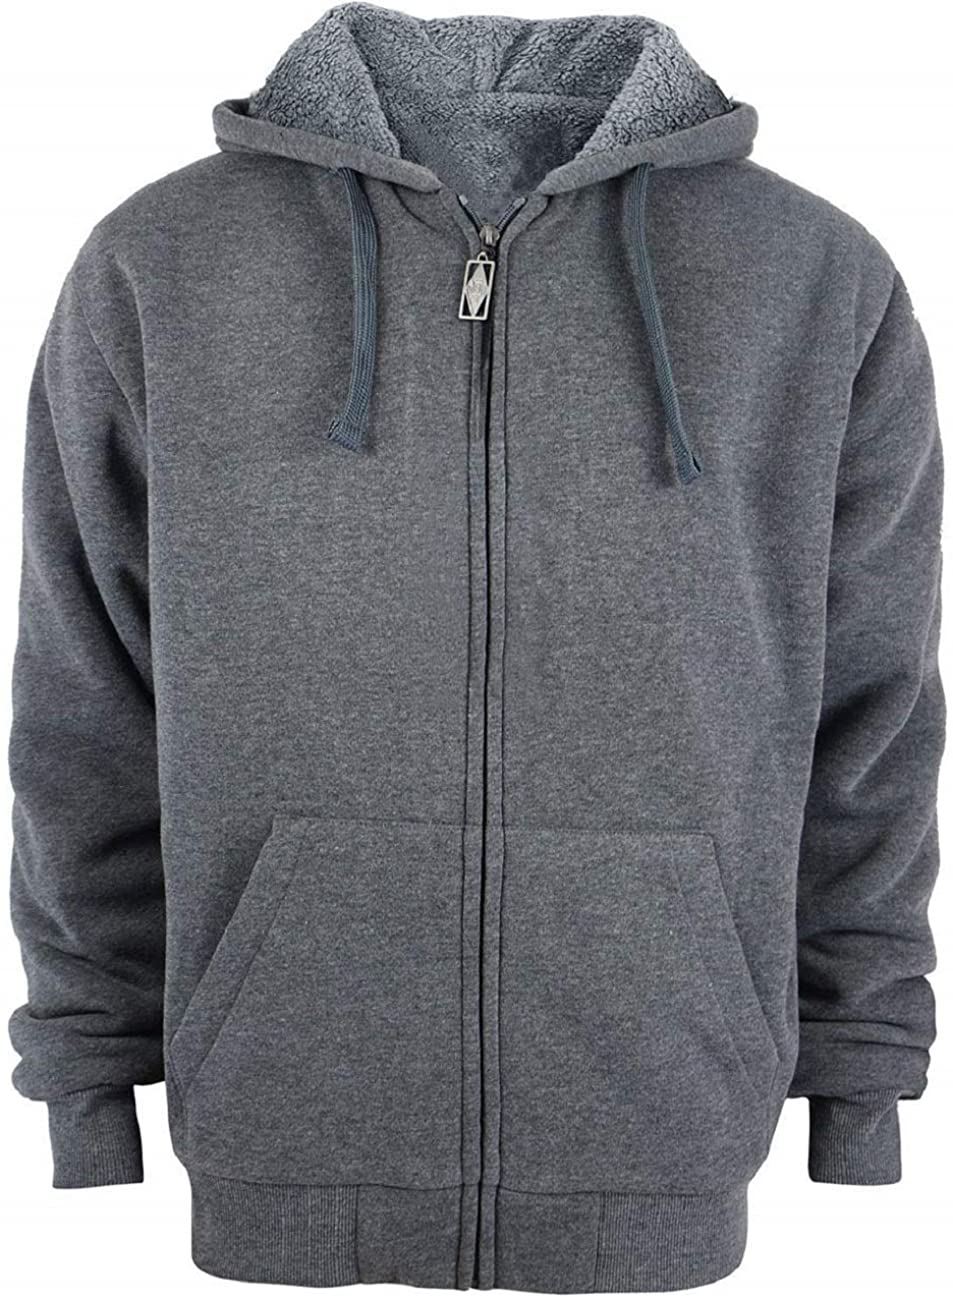 Facitisu Heavyweight Sherpa Lined Fleece Hoodie Sweatshirts for Men ...